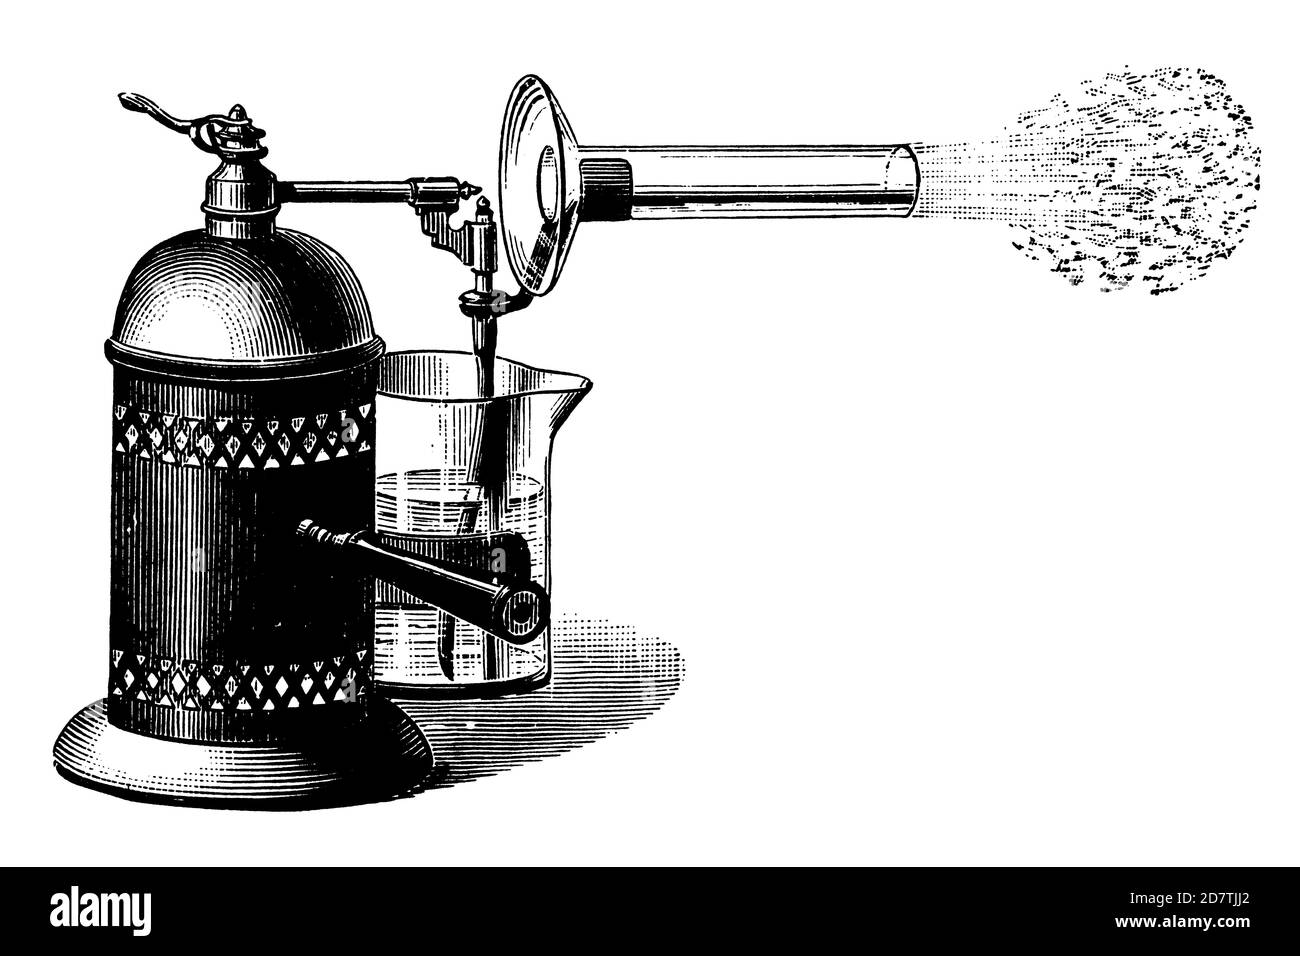 Gravure antique d'un inhalateur datant de 19th ans (isolée sur blanc). Publié dans spécimens des divers caractères et vignettes typographiques Banque D'Images